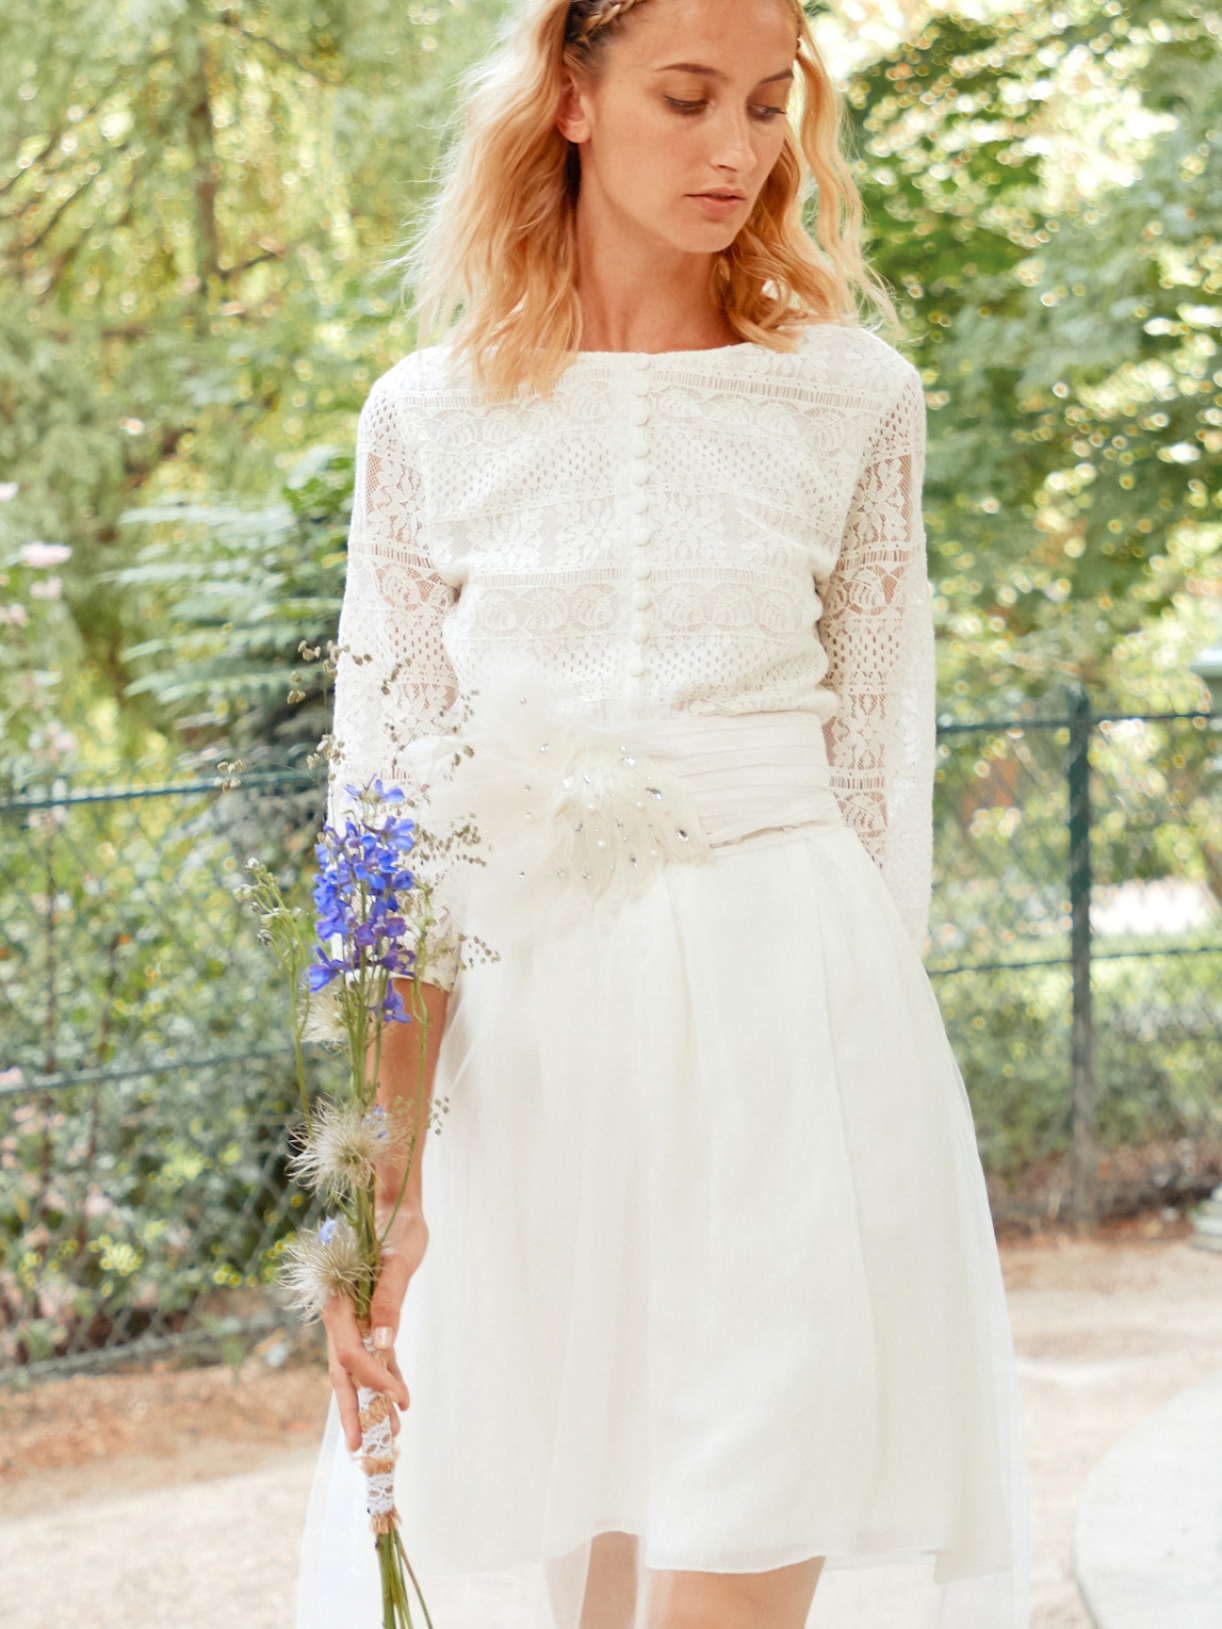 Laurette top blouse de mariée en dentelle à manches mi-longues - Robe de mariée créateur et sur-mesure pas cher a Paris - Myphilosophy